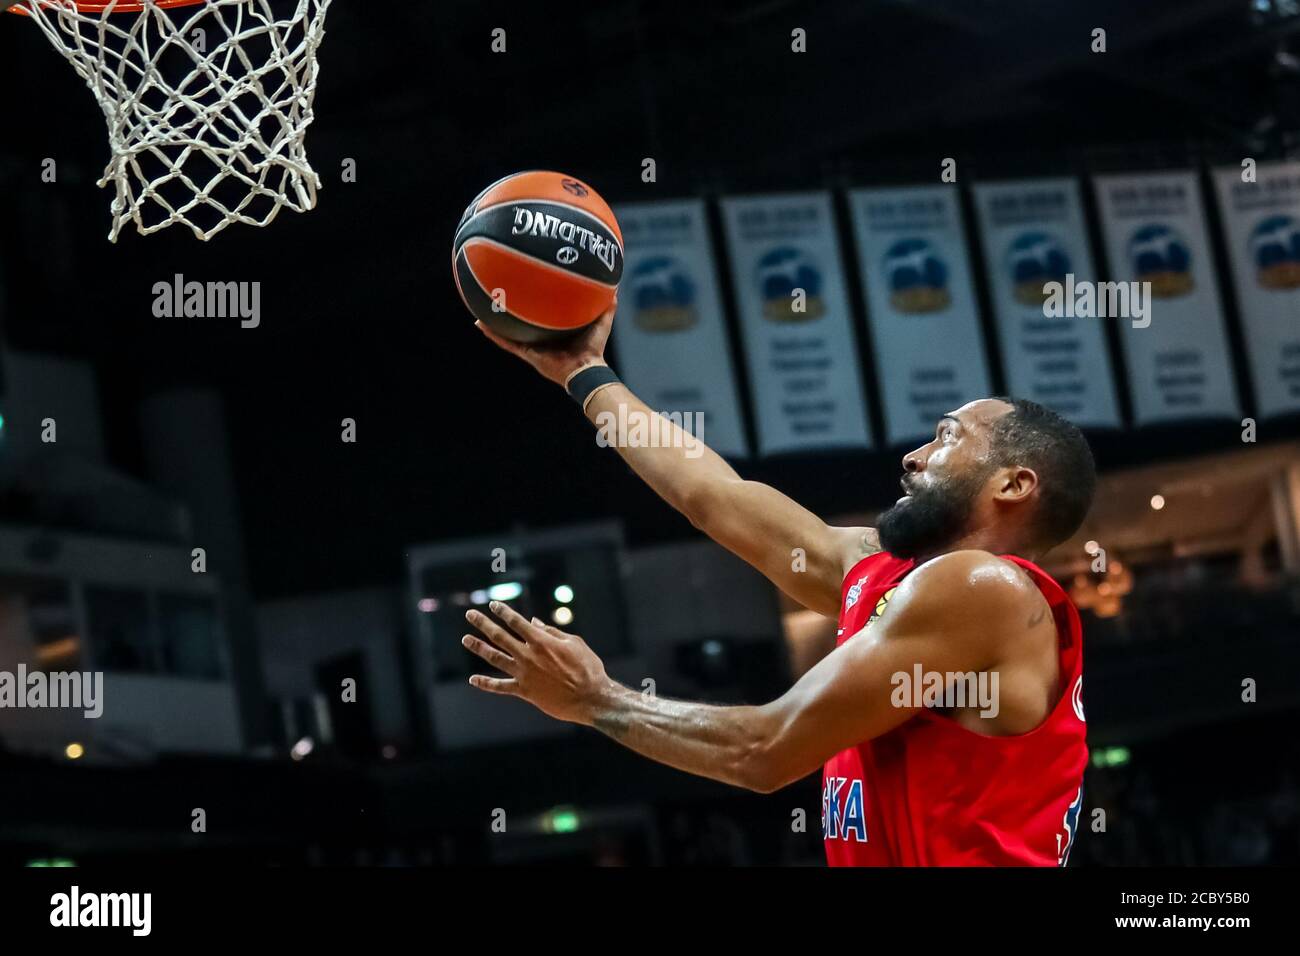 Berlin, Allemagne, 25 octobre 2019: Le joueur de basket-ball Darrun Hilliard en action pendant le match de basket-ball EuroLeague entre Alba Berlin et CSKA Banque D'Images